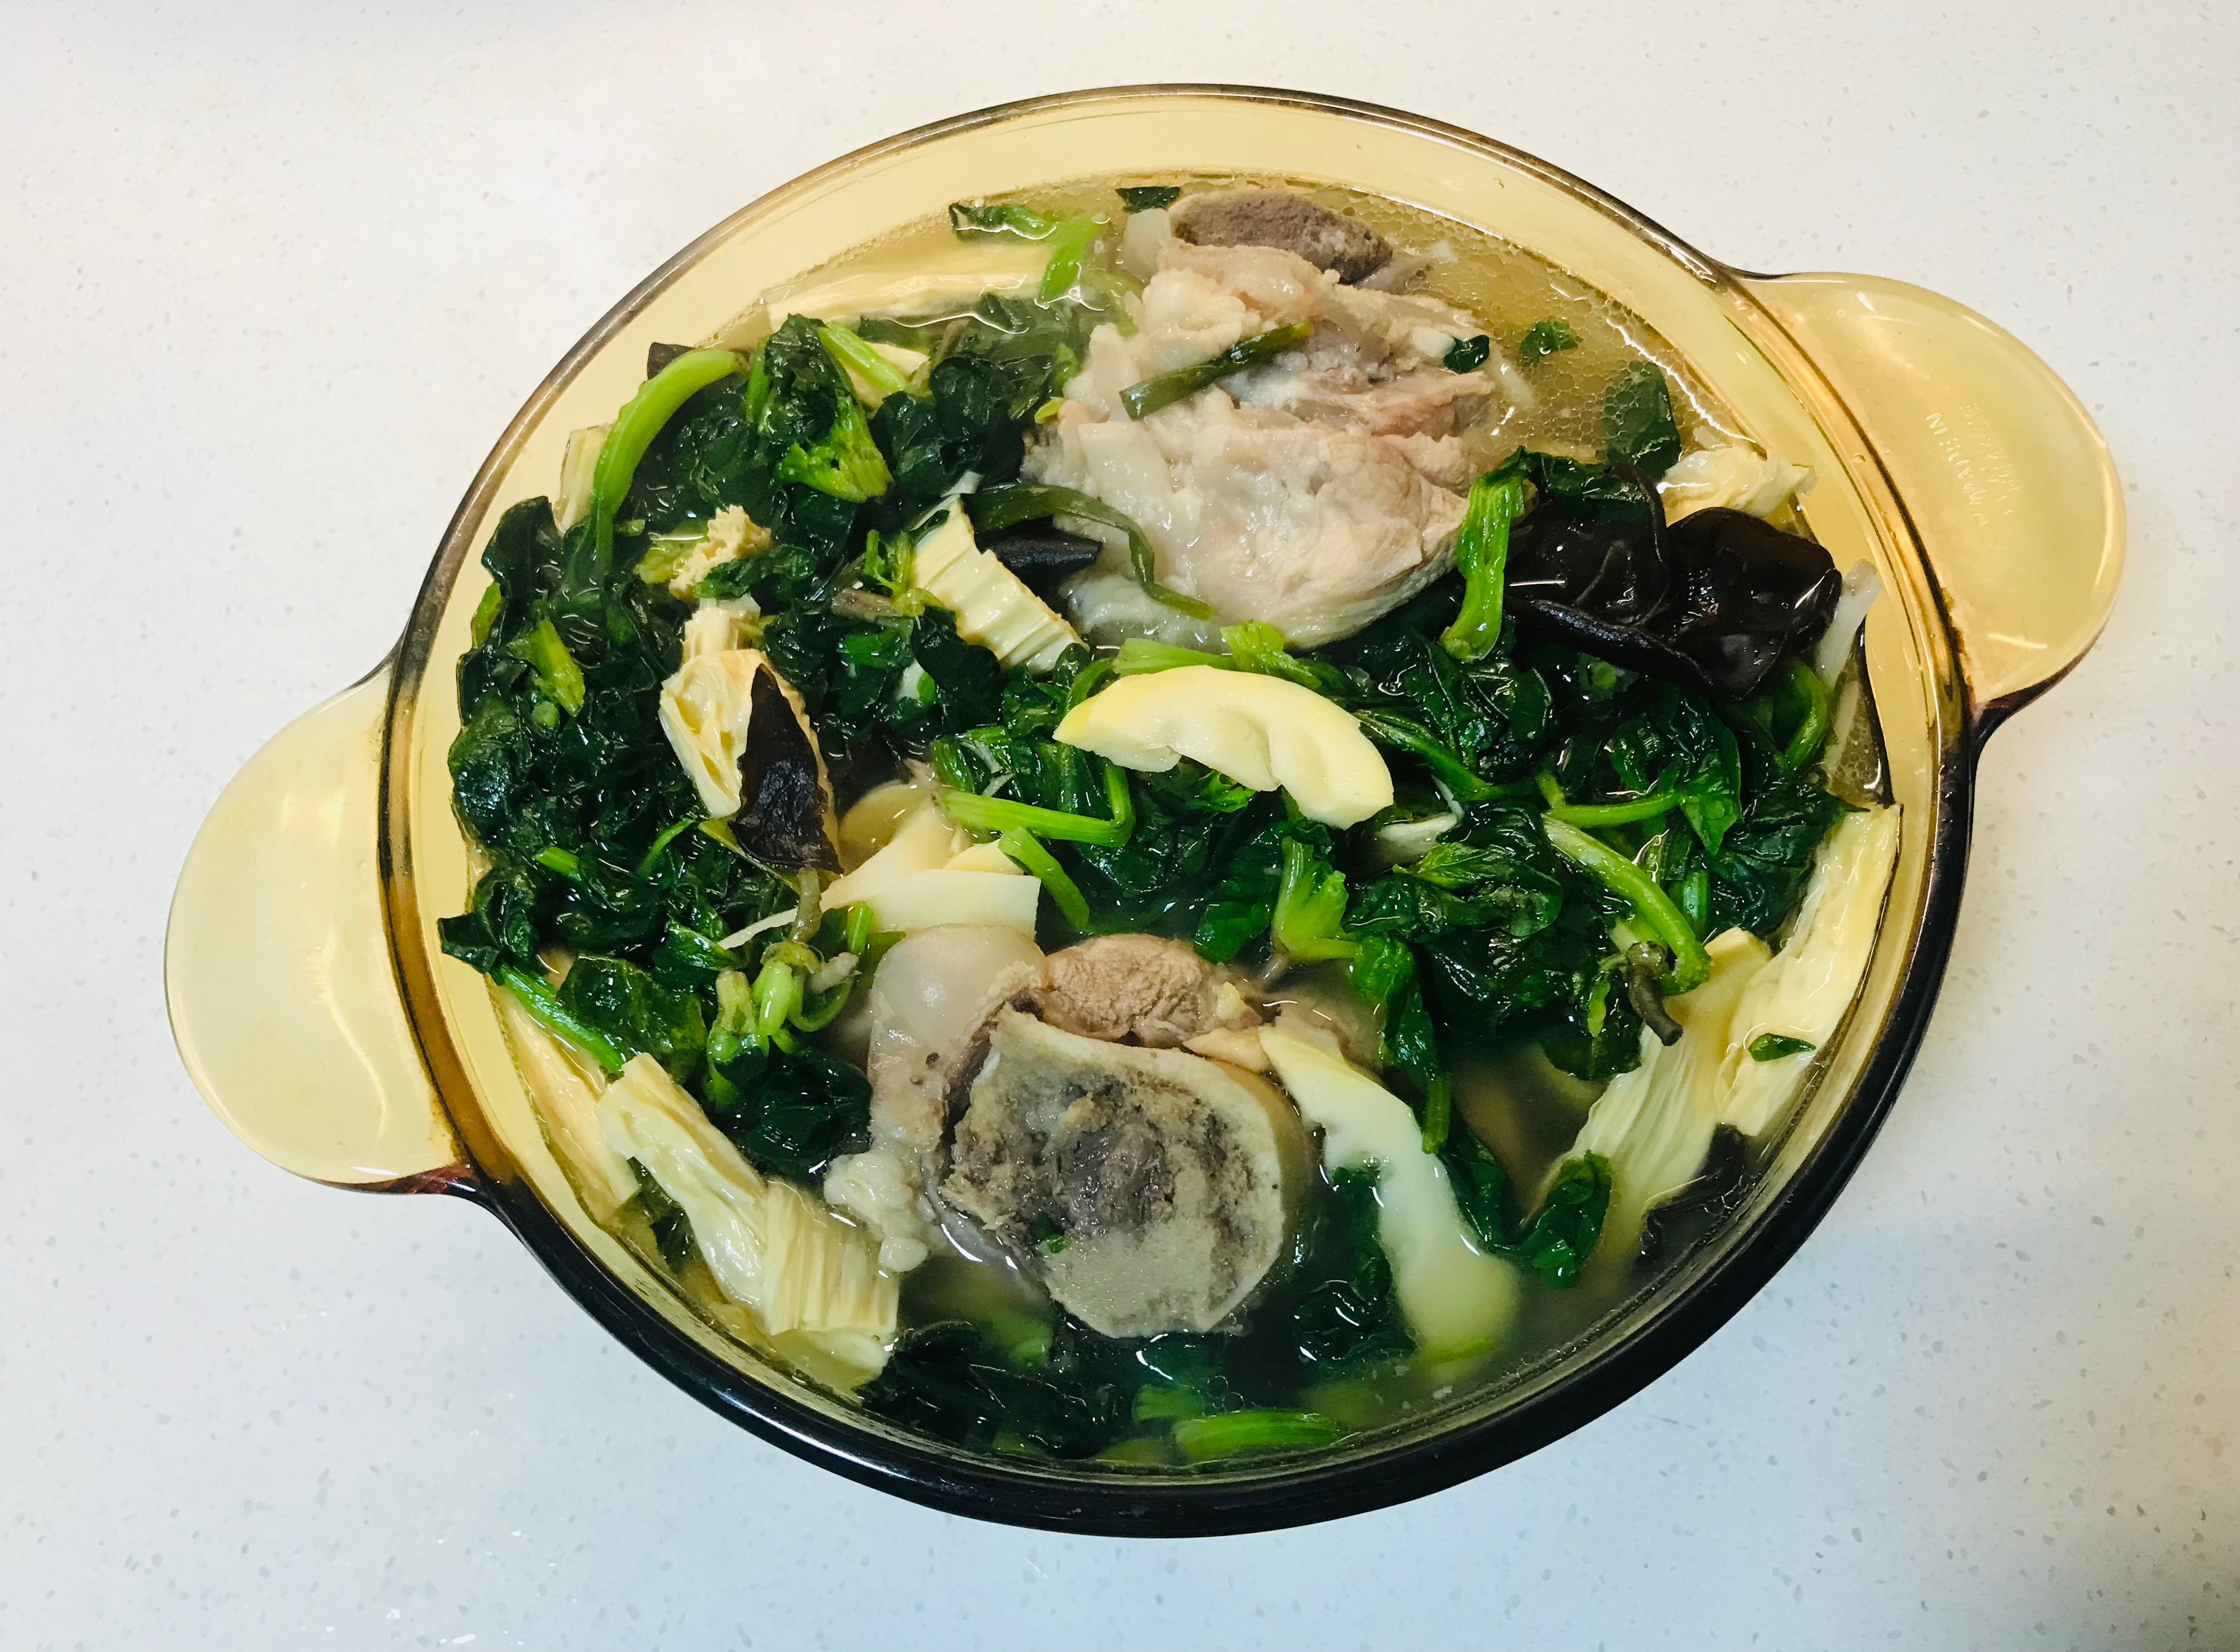 猪骨汤（菠菜、猪皮、腐竹、春笋、黑木耳、咸肉）
by wqy